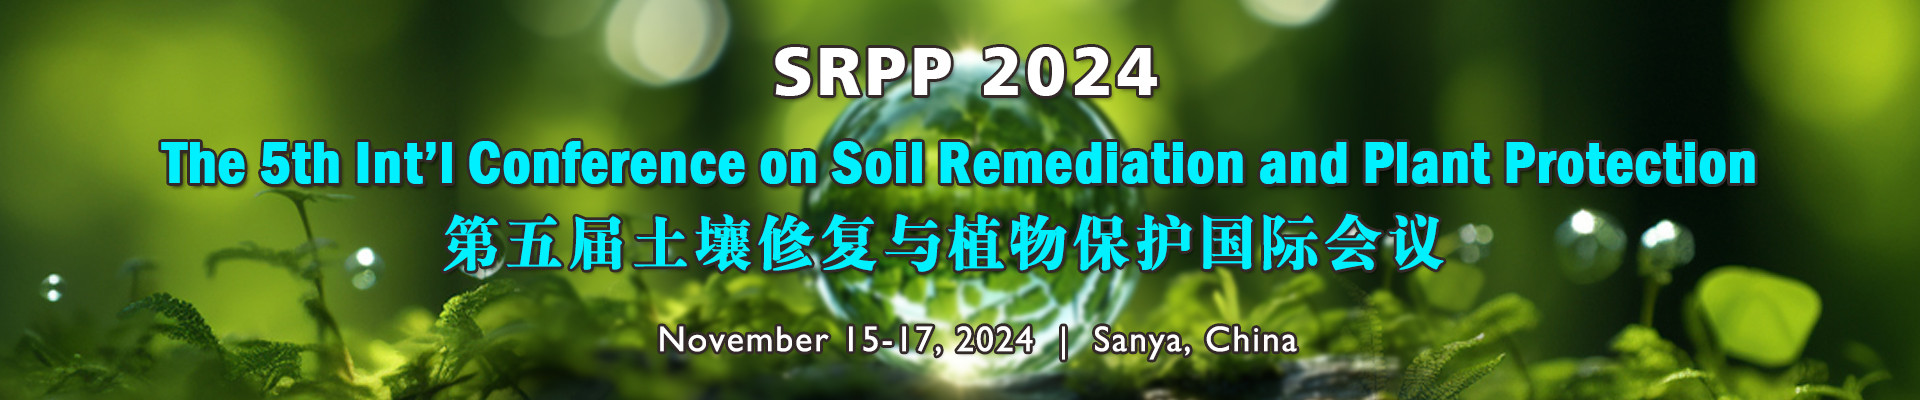 第五届土壤修复与植物保护国际会议(SRPP 2024)